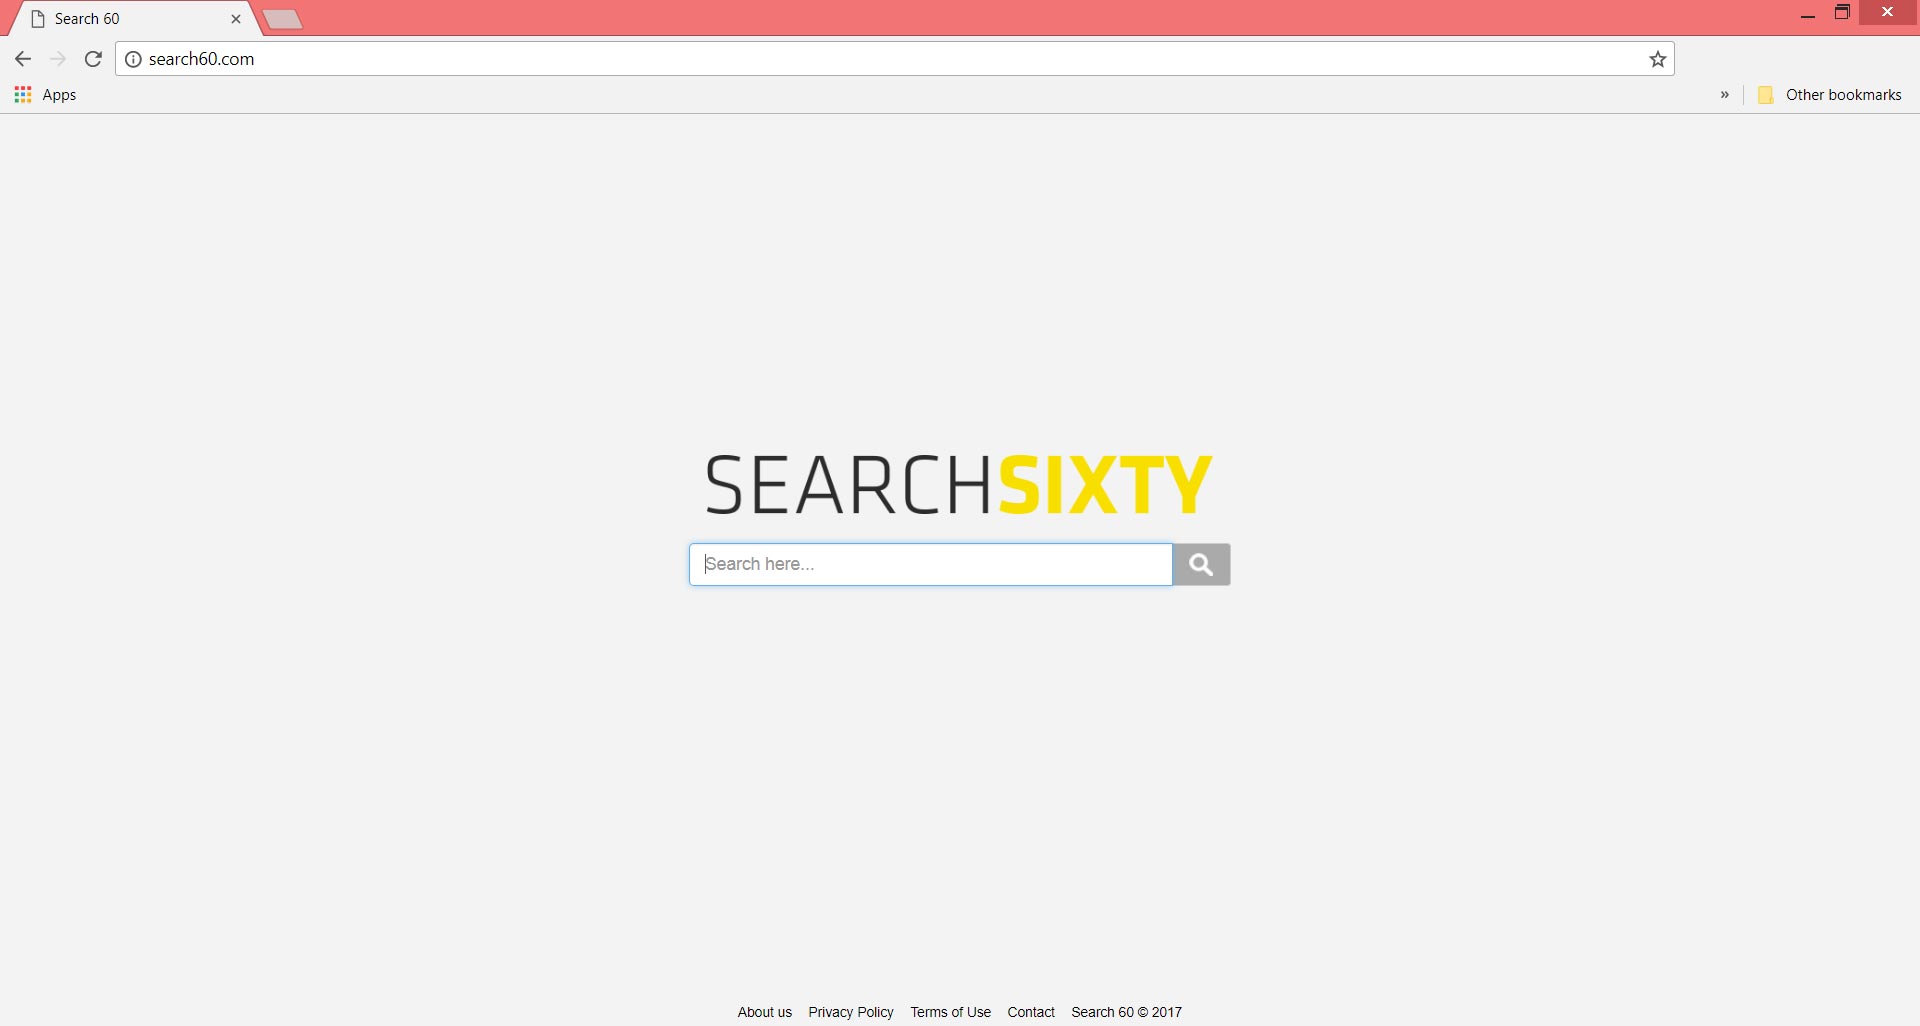 search60.com recherche soixante navigateur Guide d'enlèvement pirate de l'air de la page d'accueil sensorstechforum